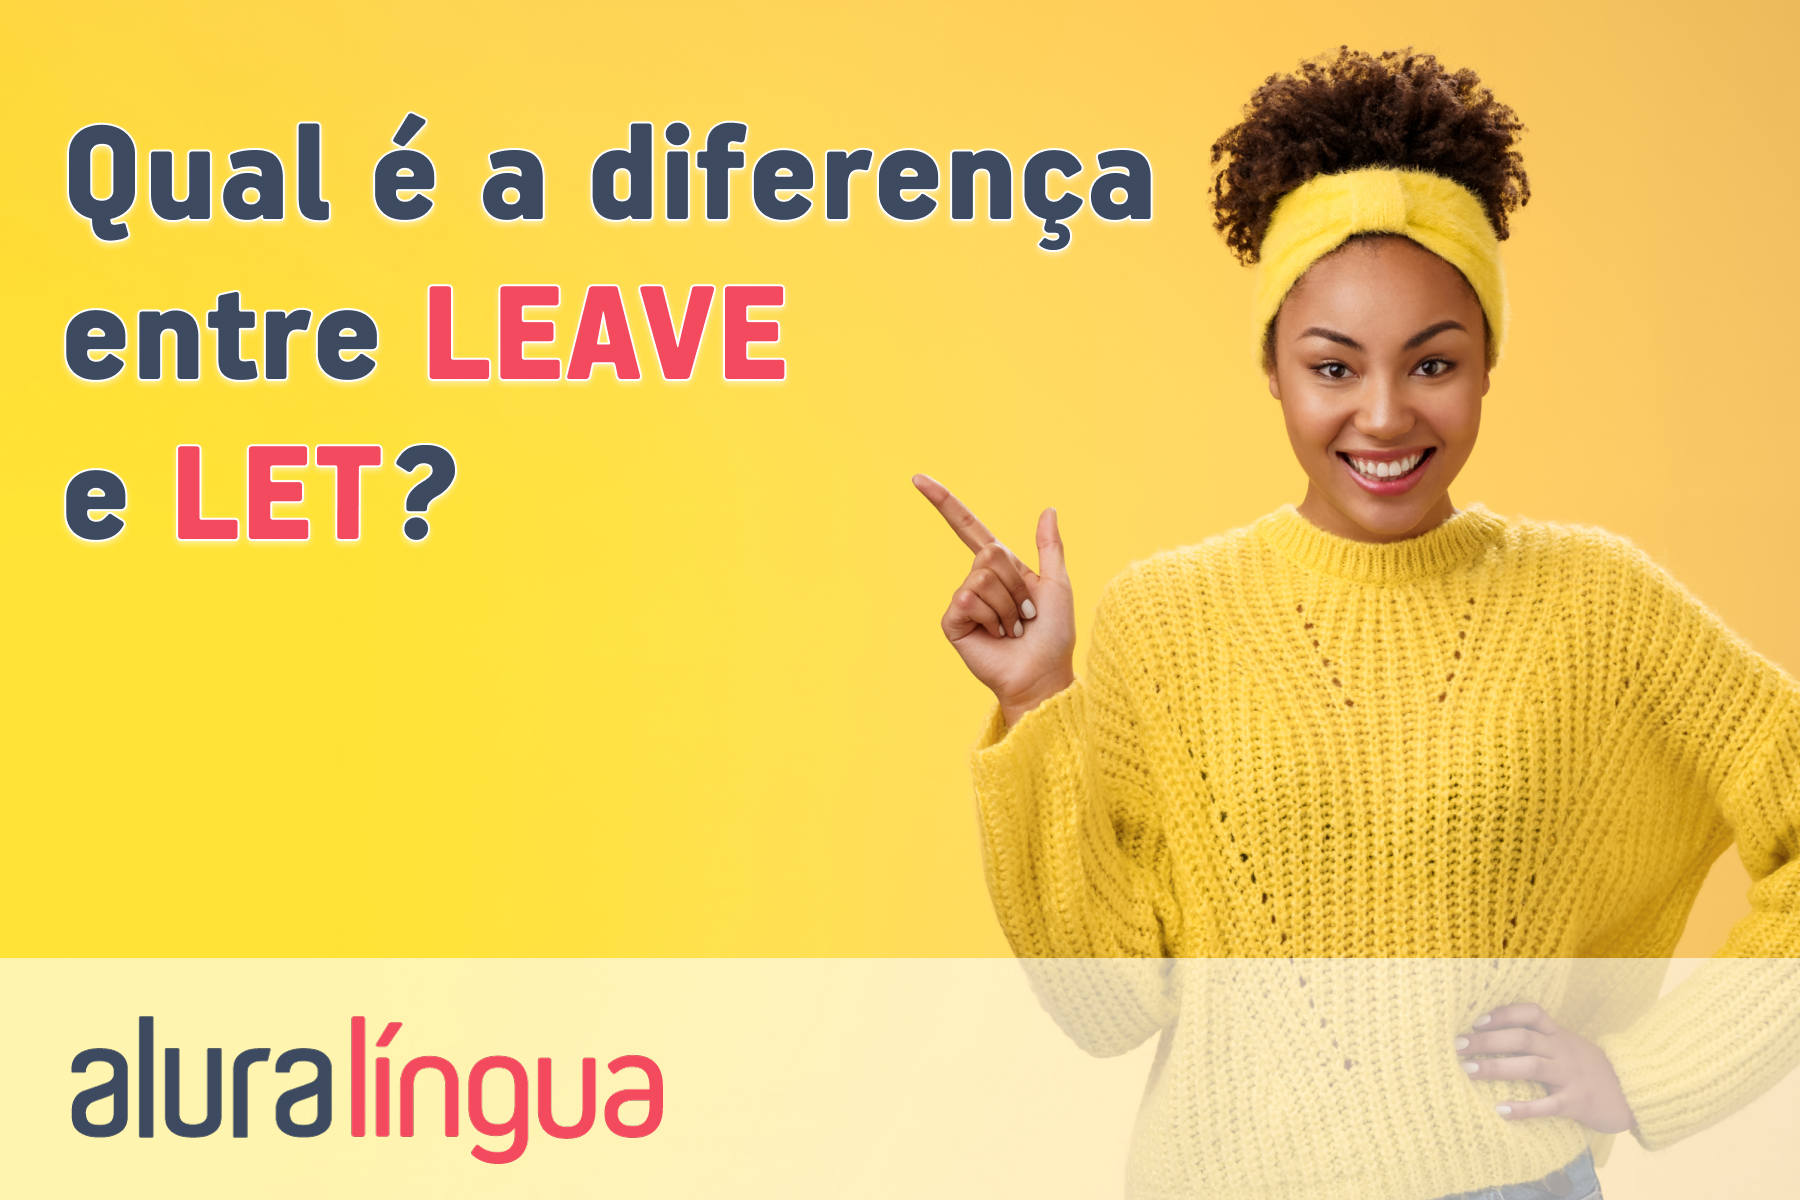 Qual é a diferença entre leave e let #inset